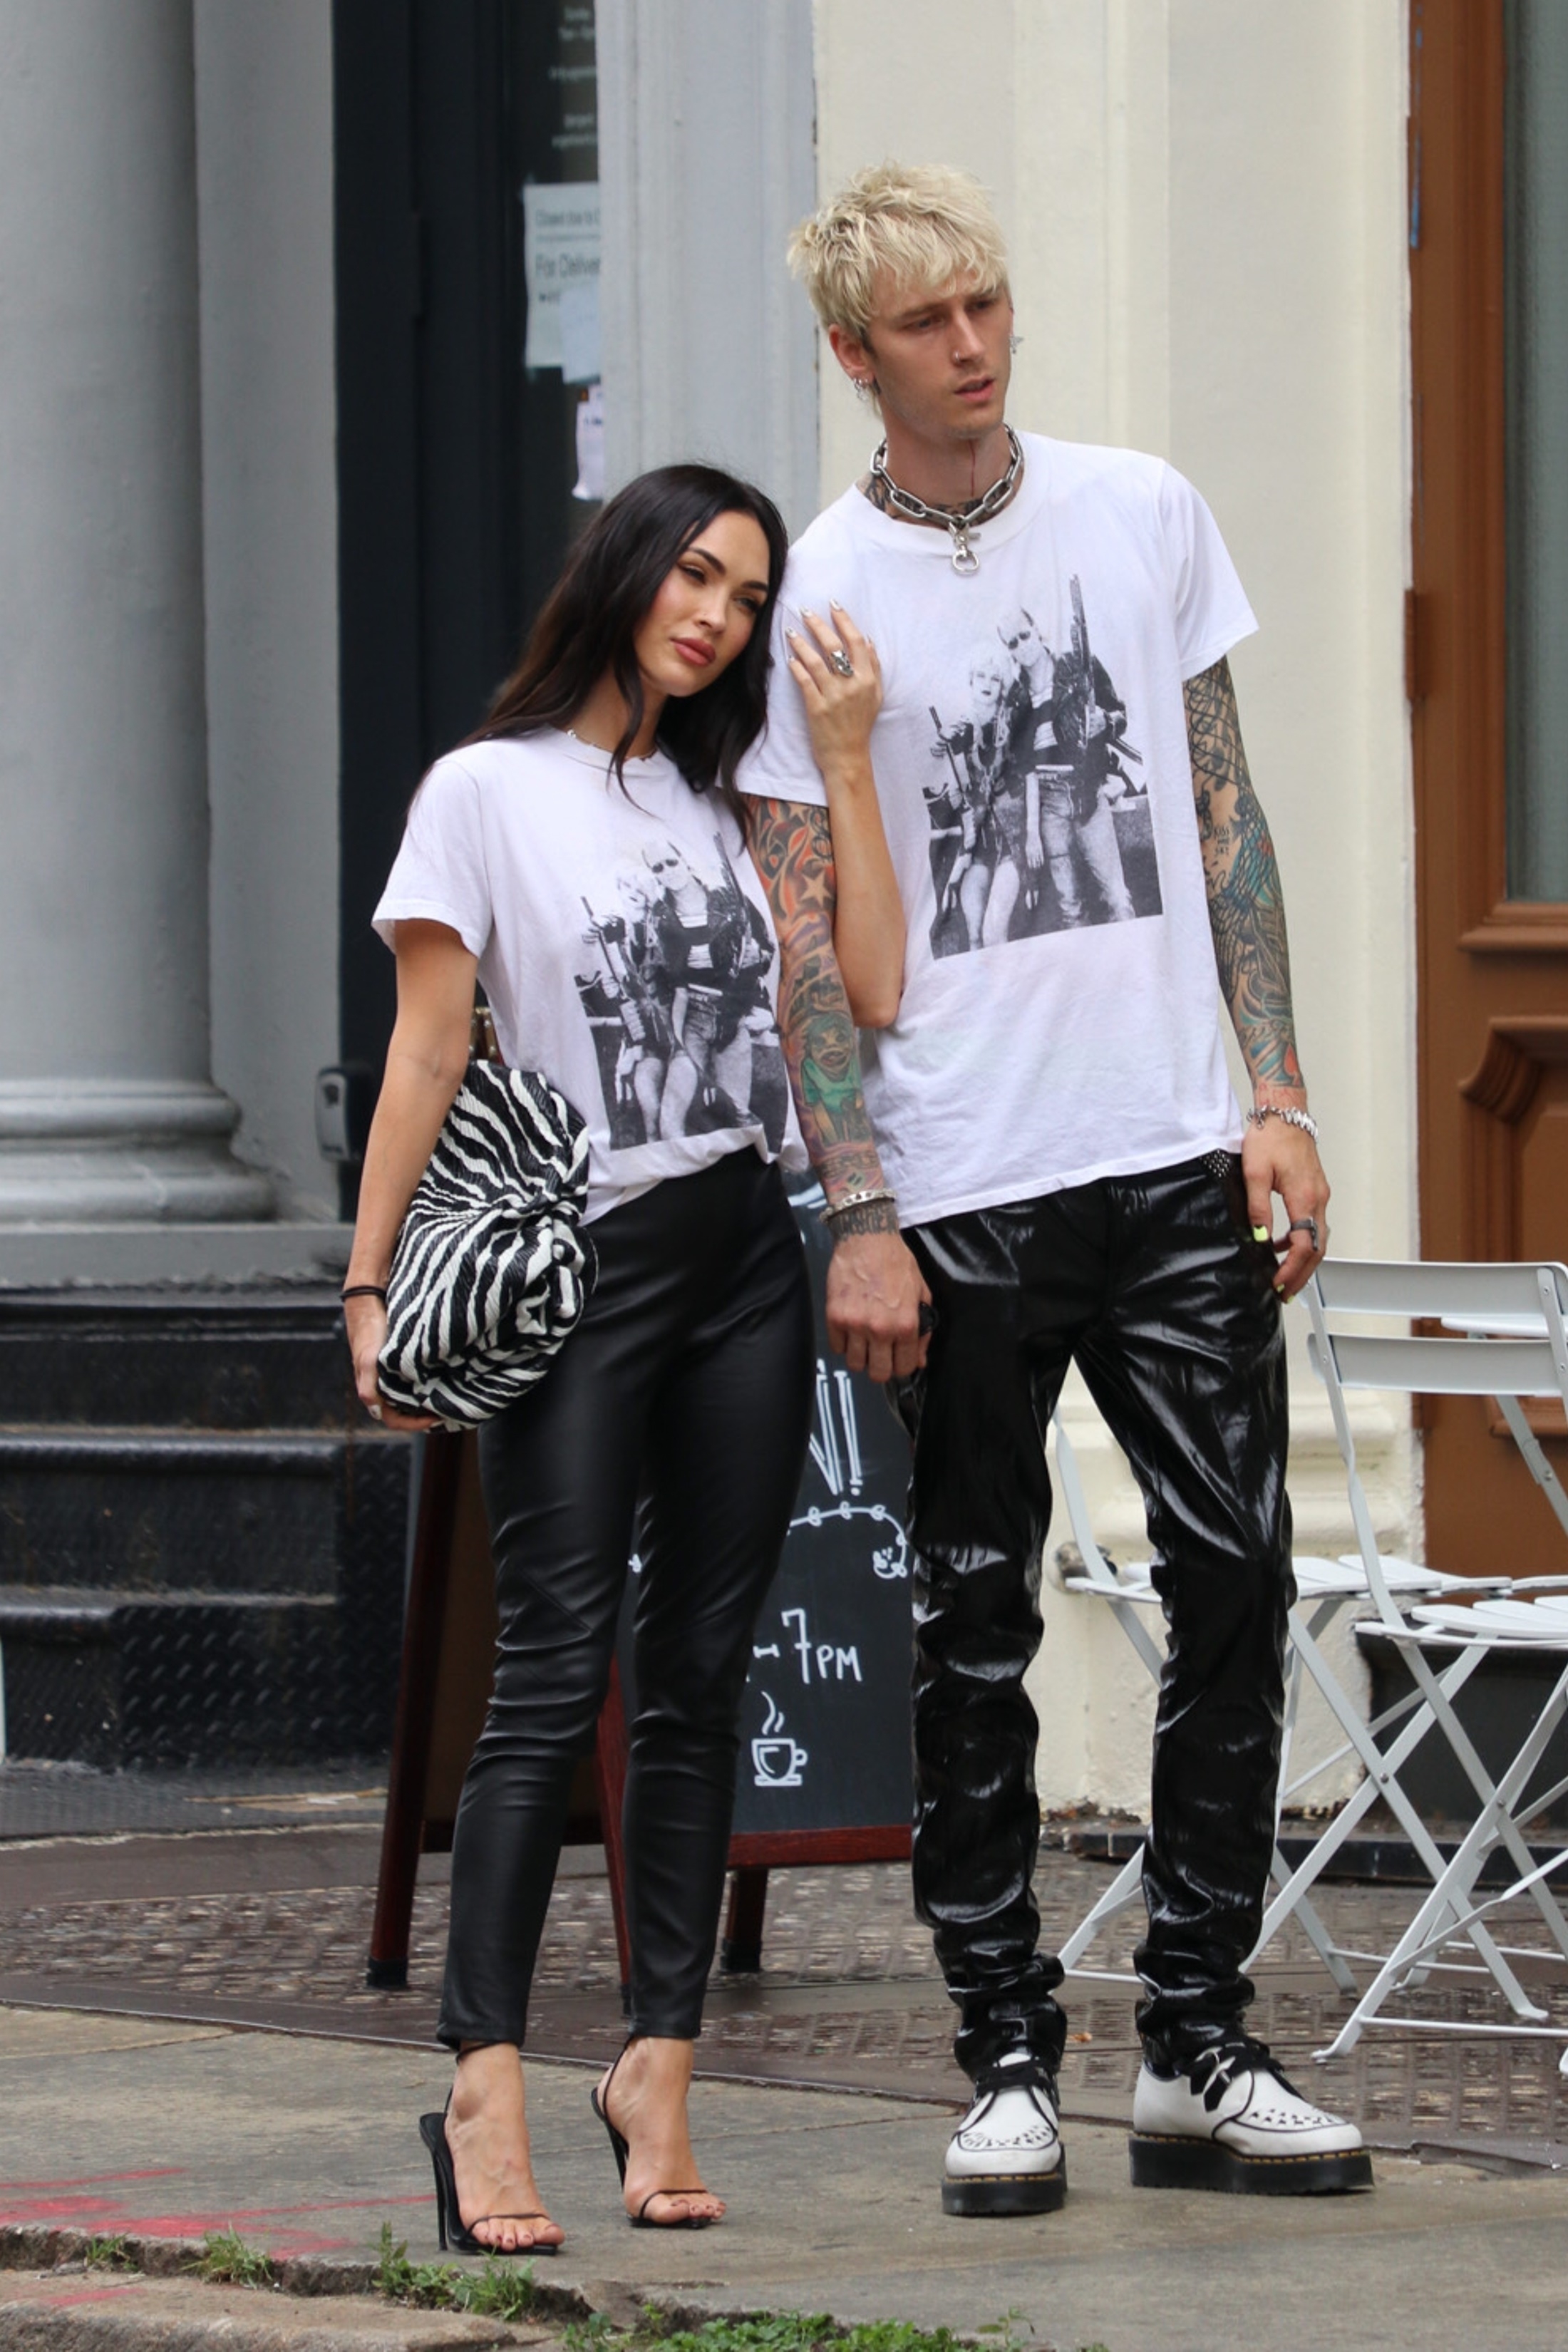 Paseo romántico. Megan Fox y Machine Gun Kelly caminaron por las calles del barrio Soho de Nueva York, en donde recorrieron algunas tiendas e hicieron compras. La pareja lució el mismo look: pantalones metalizados negros y remera con estampa